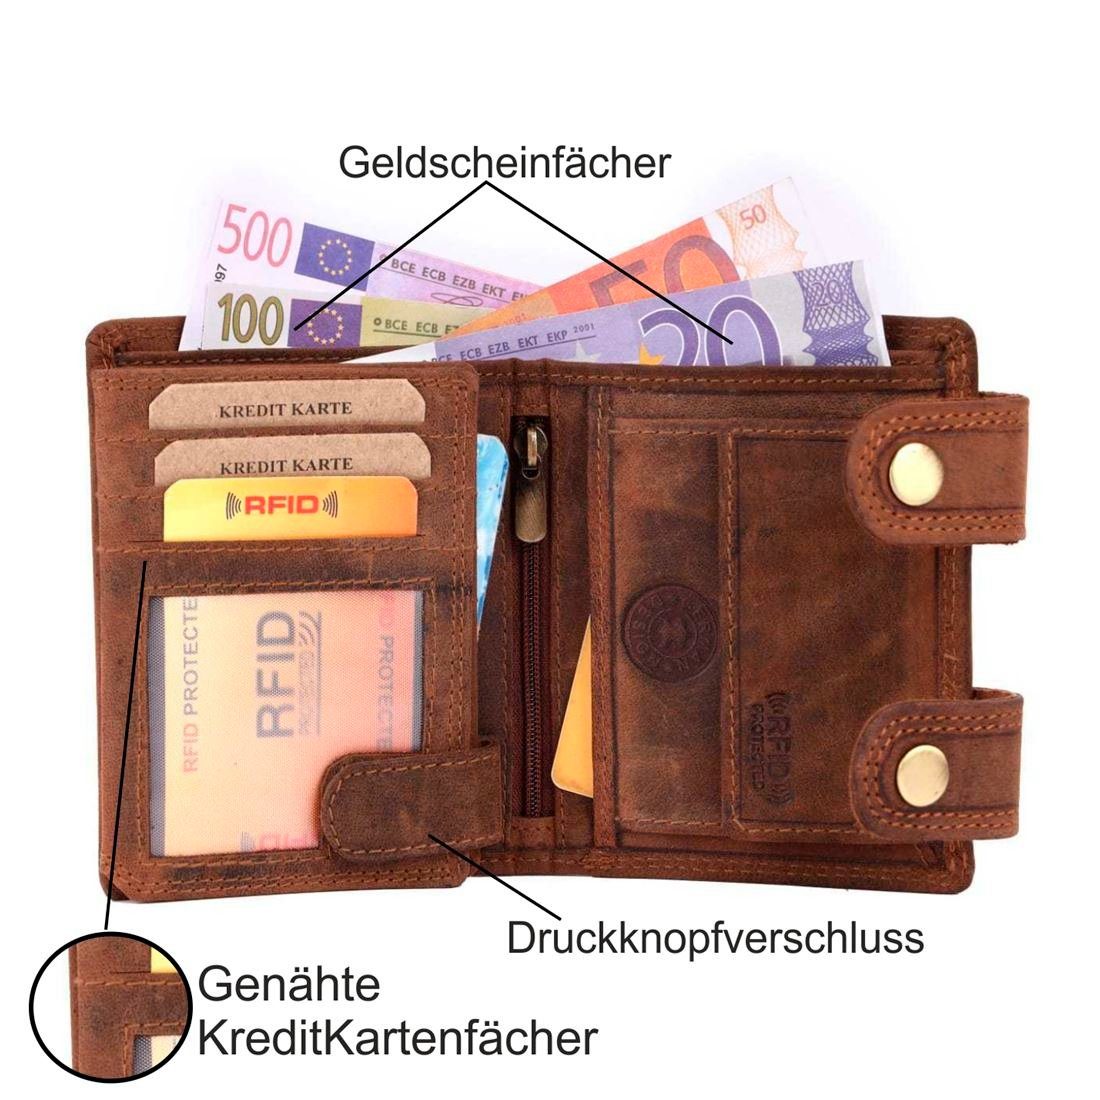 SHG Geldbörse Herren Leder RFID mit Portemonnaie, Büffelleder Kette Lederbörse mit Münzfach Börse Schutz